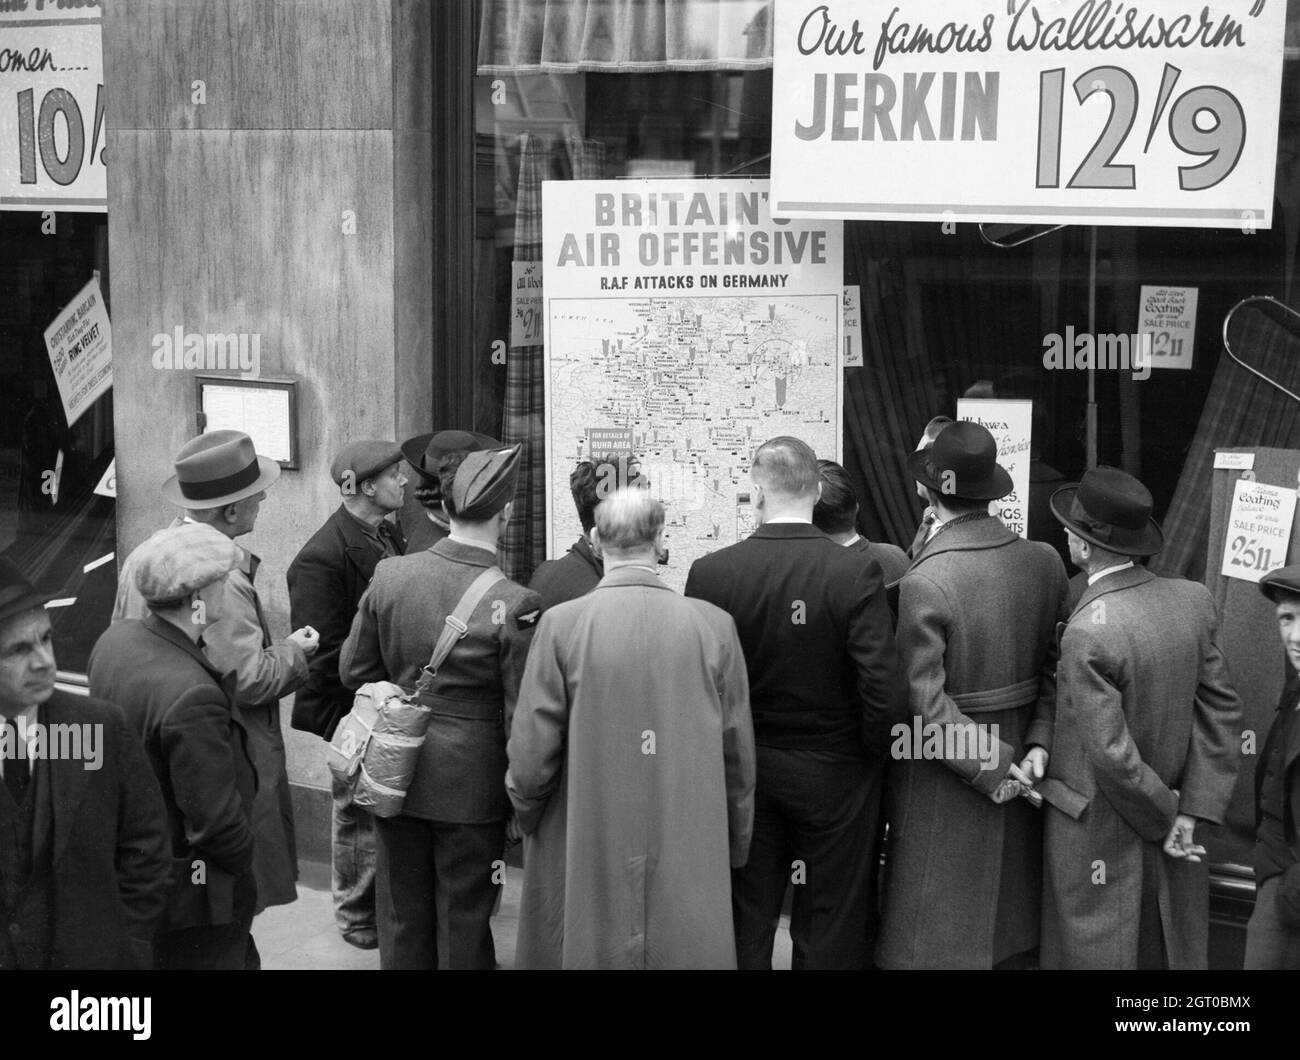 Ein britischer Flieger gehört zu einer Gruppe von Zivilisten, die um das Fenster eines Ladens in Holborn, London, gedrängt sind, um sich eine dort abgestellte Karte mit dem Titel 'Britain's Air Offensive' anzusehen, auf der über 700 Überfälle der Royal Air Force auf Deutschland zu sehen sind. Stockfoto